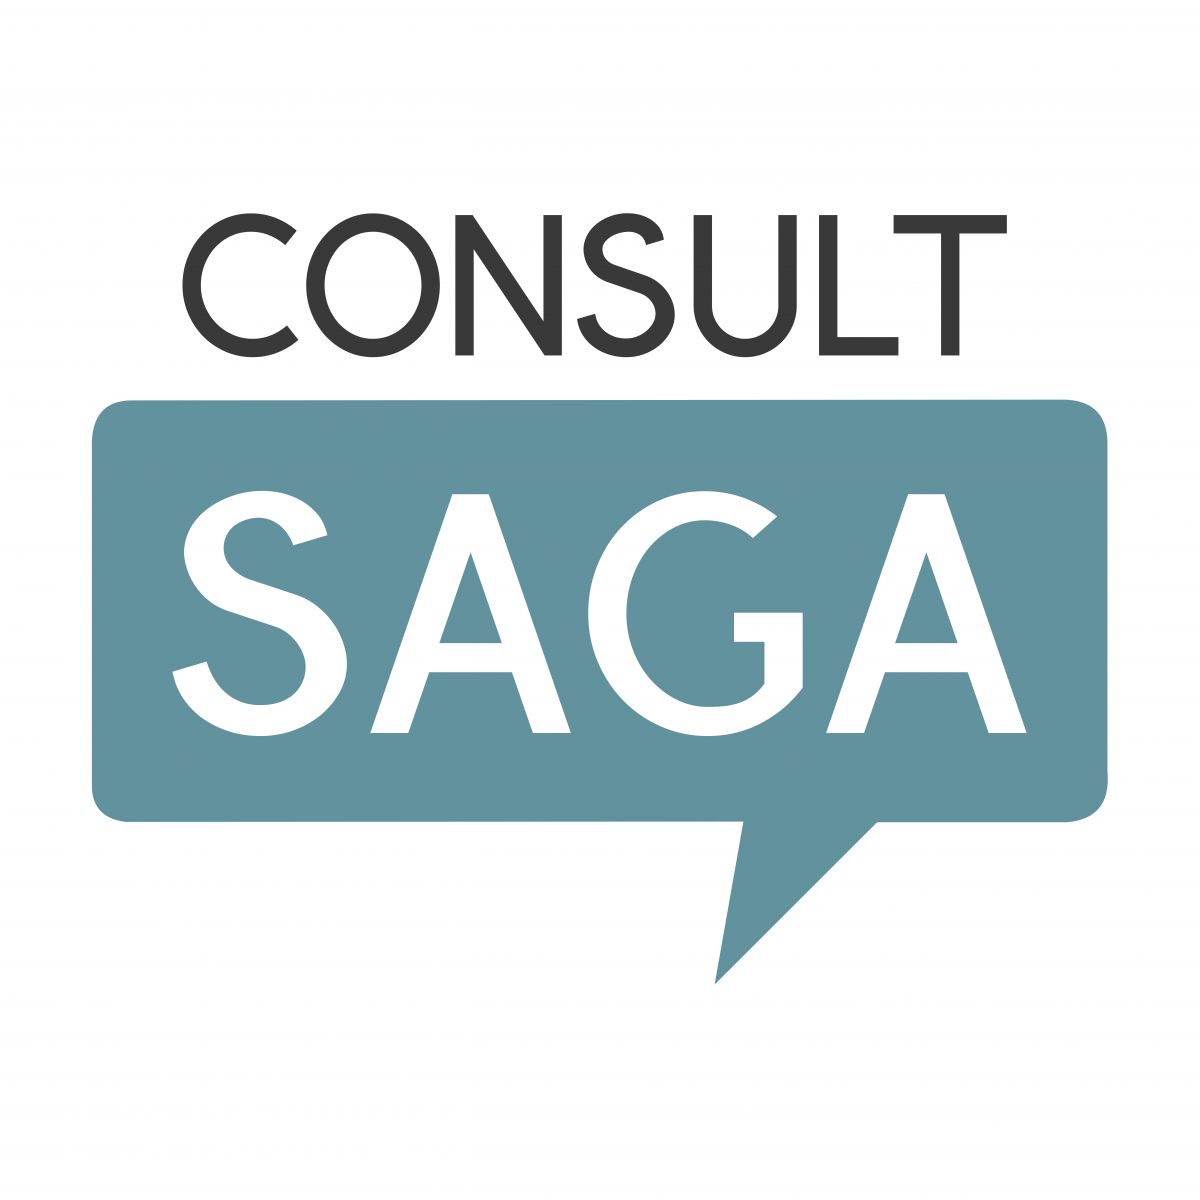 Consult Saga